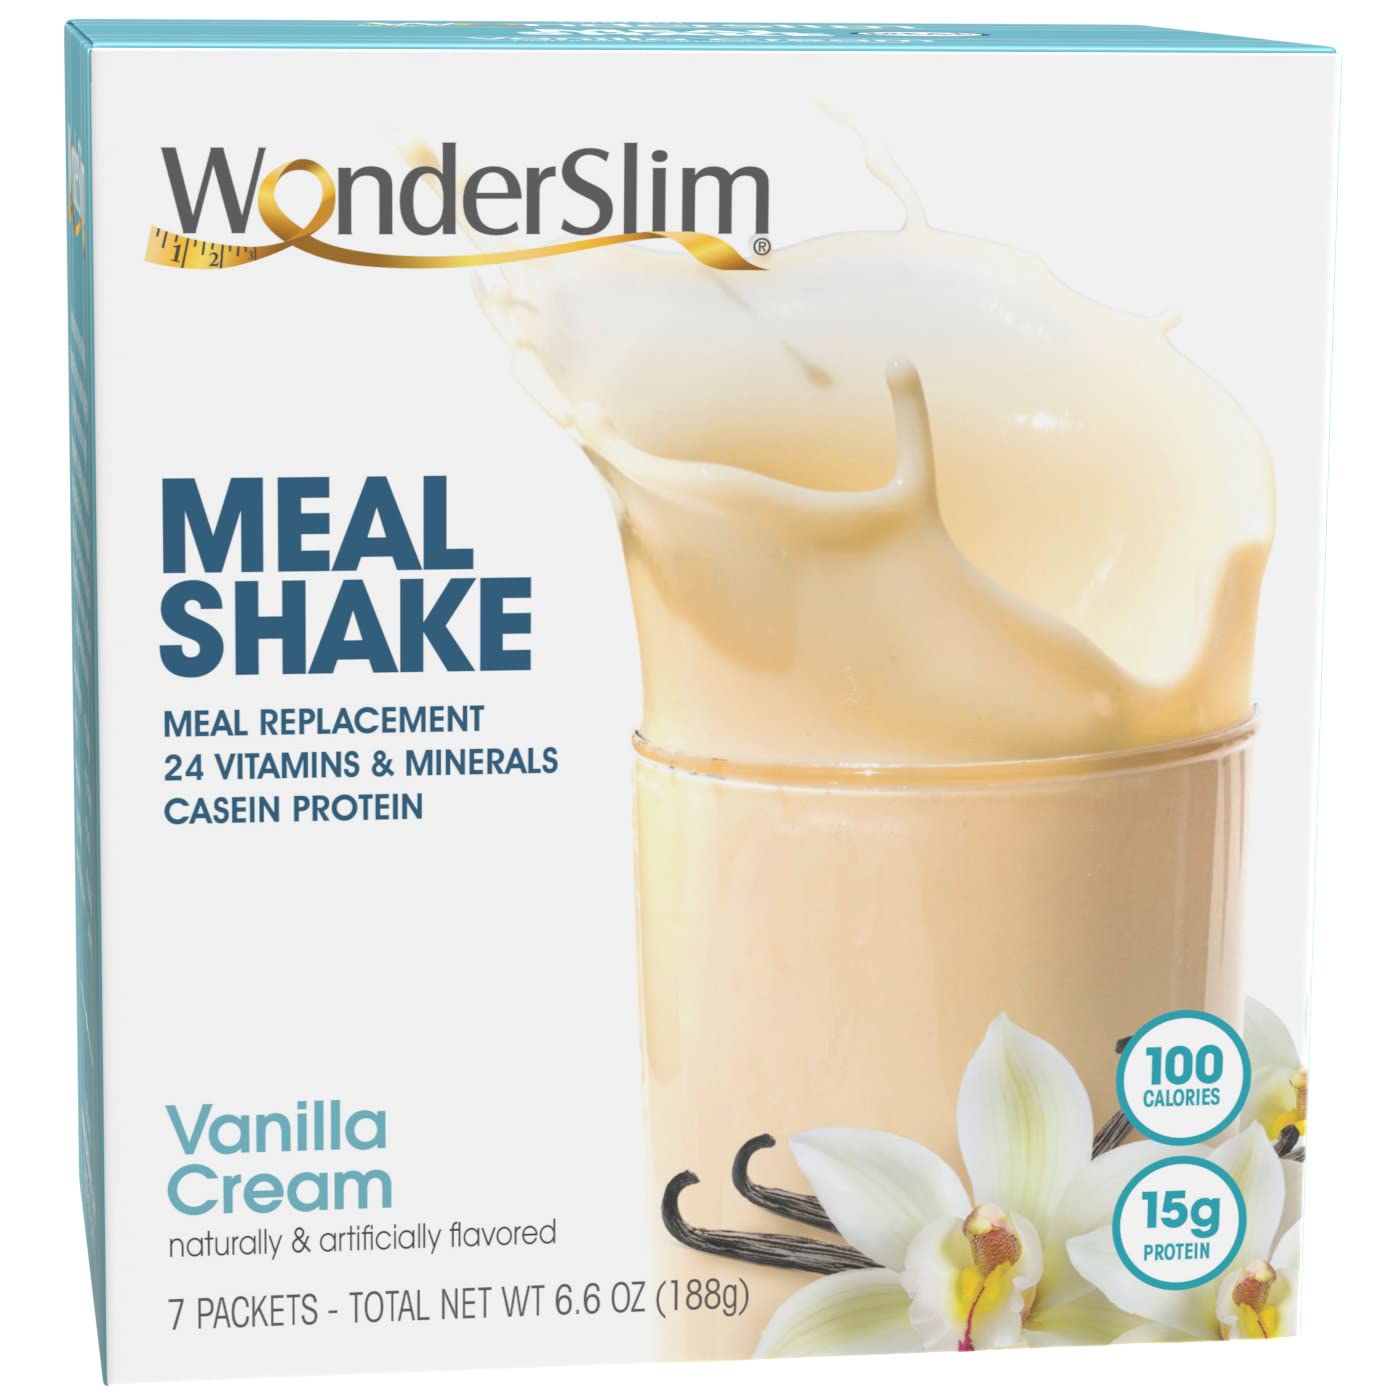 WonderSlim Meal Replacement Shake, Vanilla Cream, 15g Protein, 24 Vitamins & Minerals, Gluten Free (7ct)